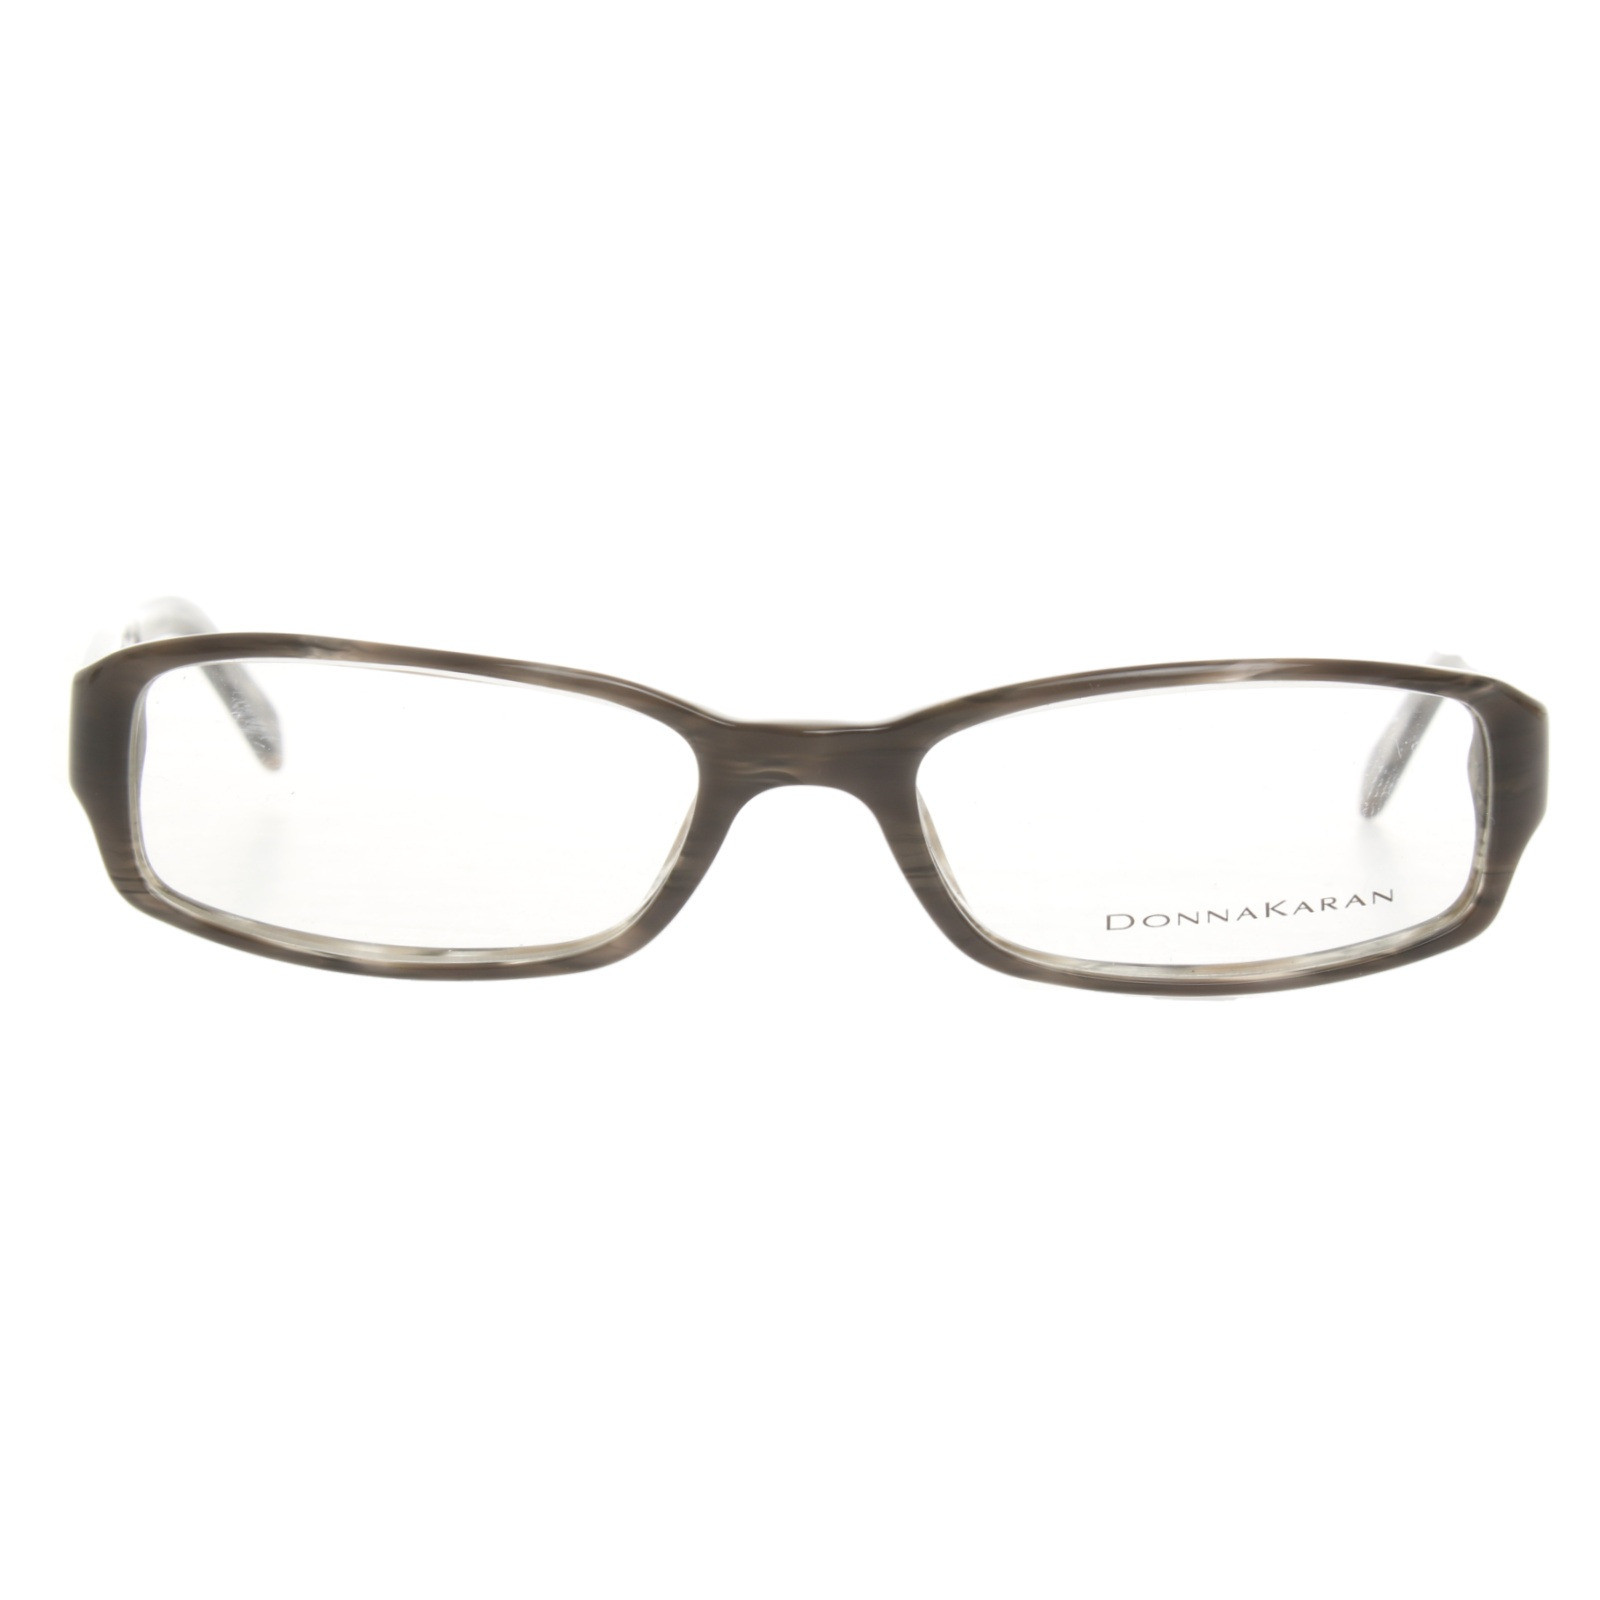 Dkny Brille in Grau - Second Hand Dkny Brille in Grau gebraucht kaufen für  49€ (7193625)